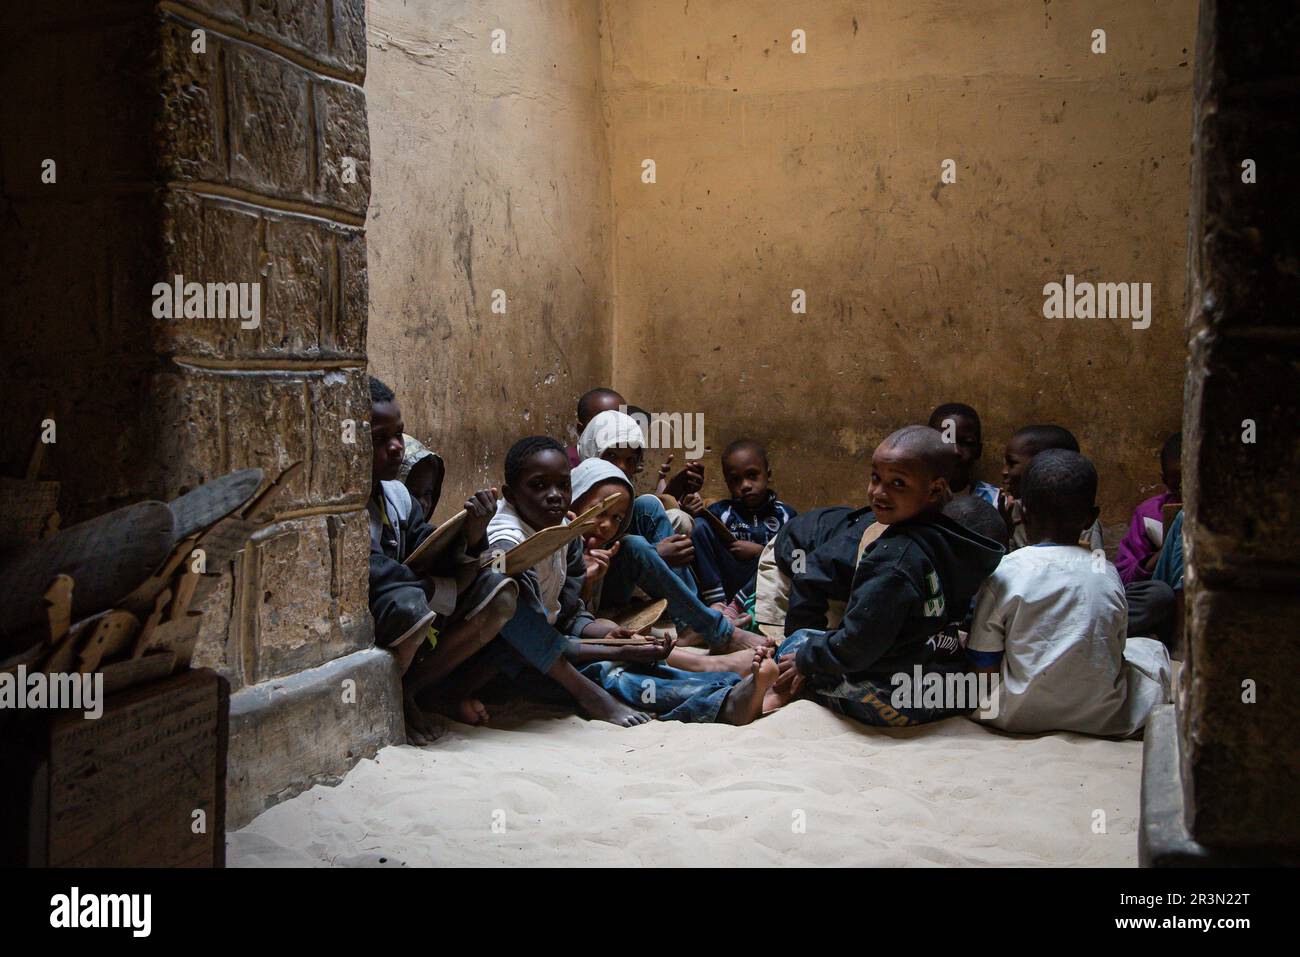 Nicolas Remene / le Pictorium - Baba El Hadj, un giovane scolaro a Timbuktu, Mali. 18/1/2020 - Mali / Tombouctou (Timbuktu) / Tombouctou (Timbuk Foto Stock